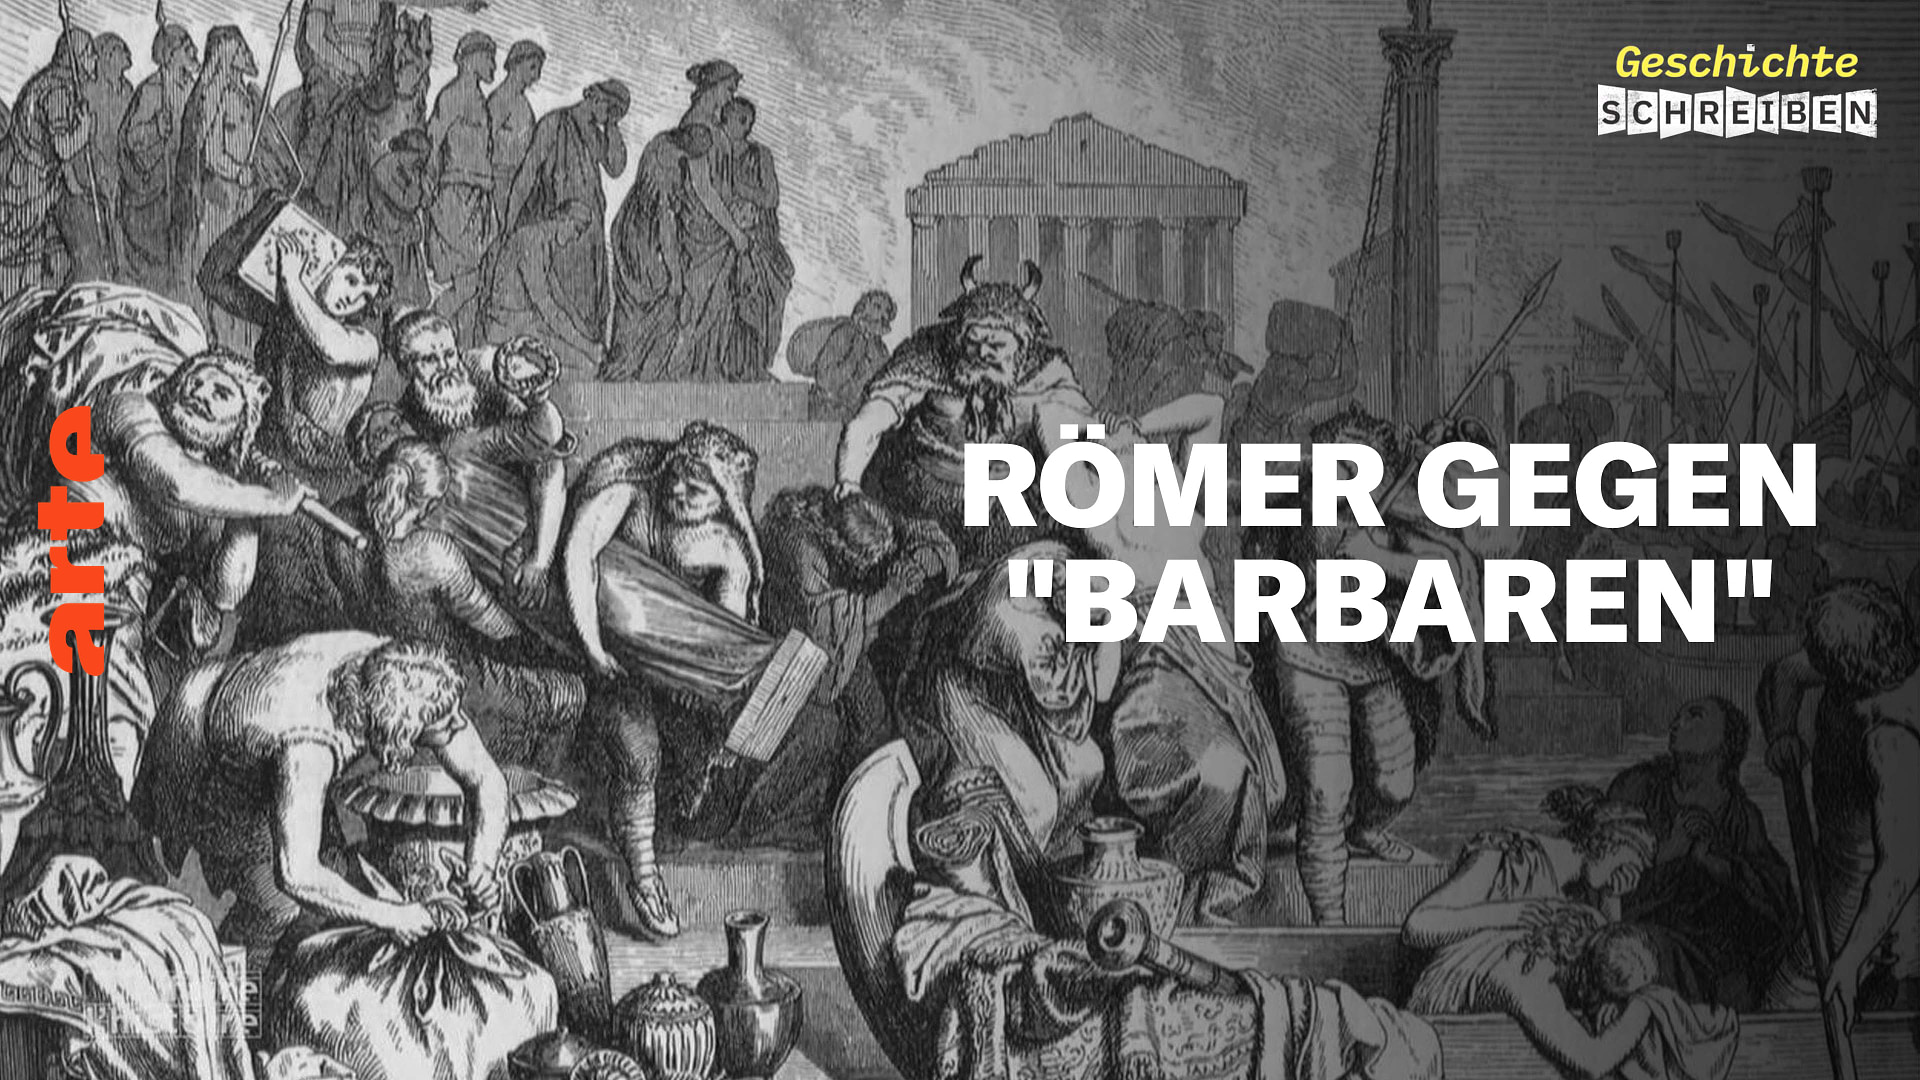 Römer gegen Barbaren, Konstruktion einer Legende